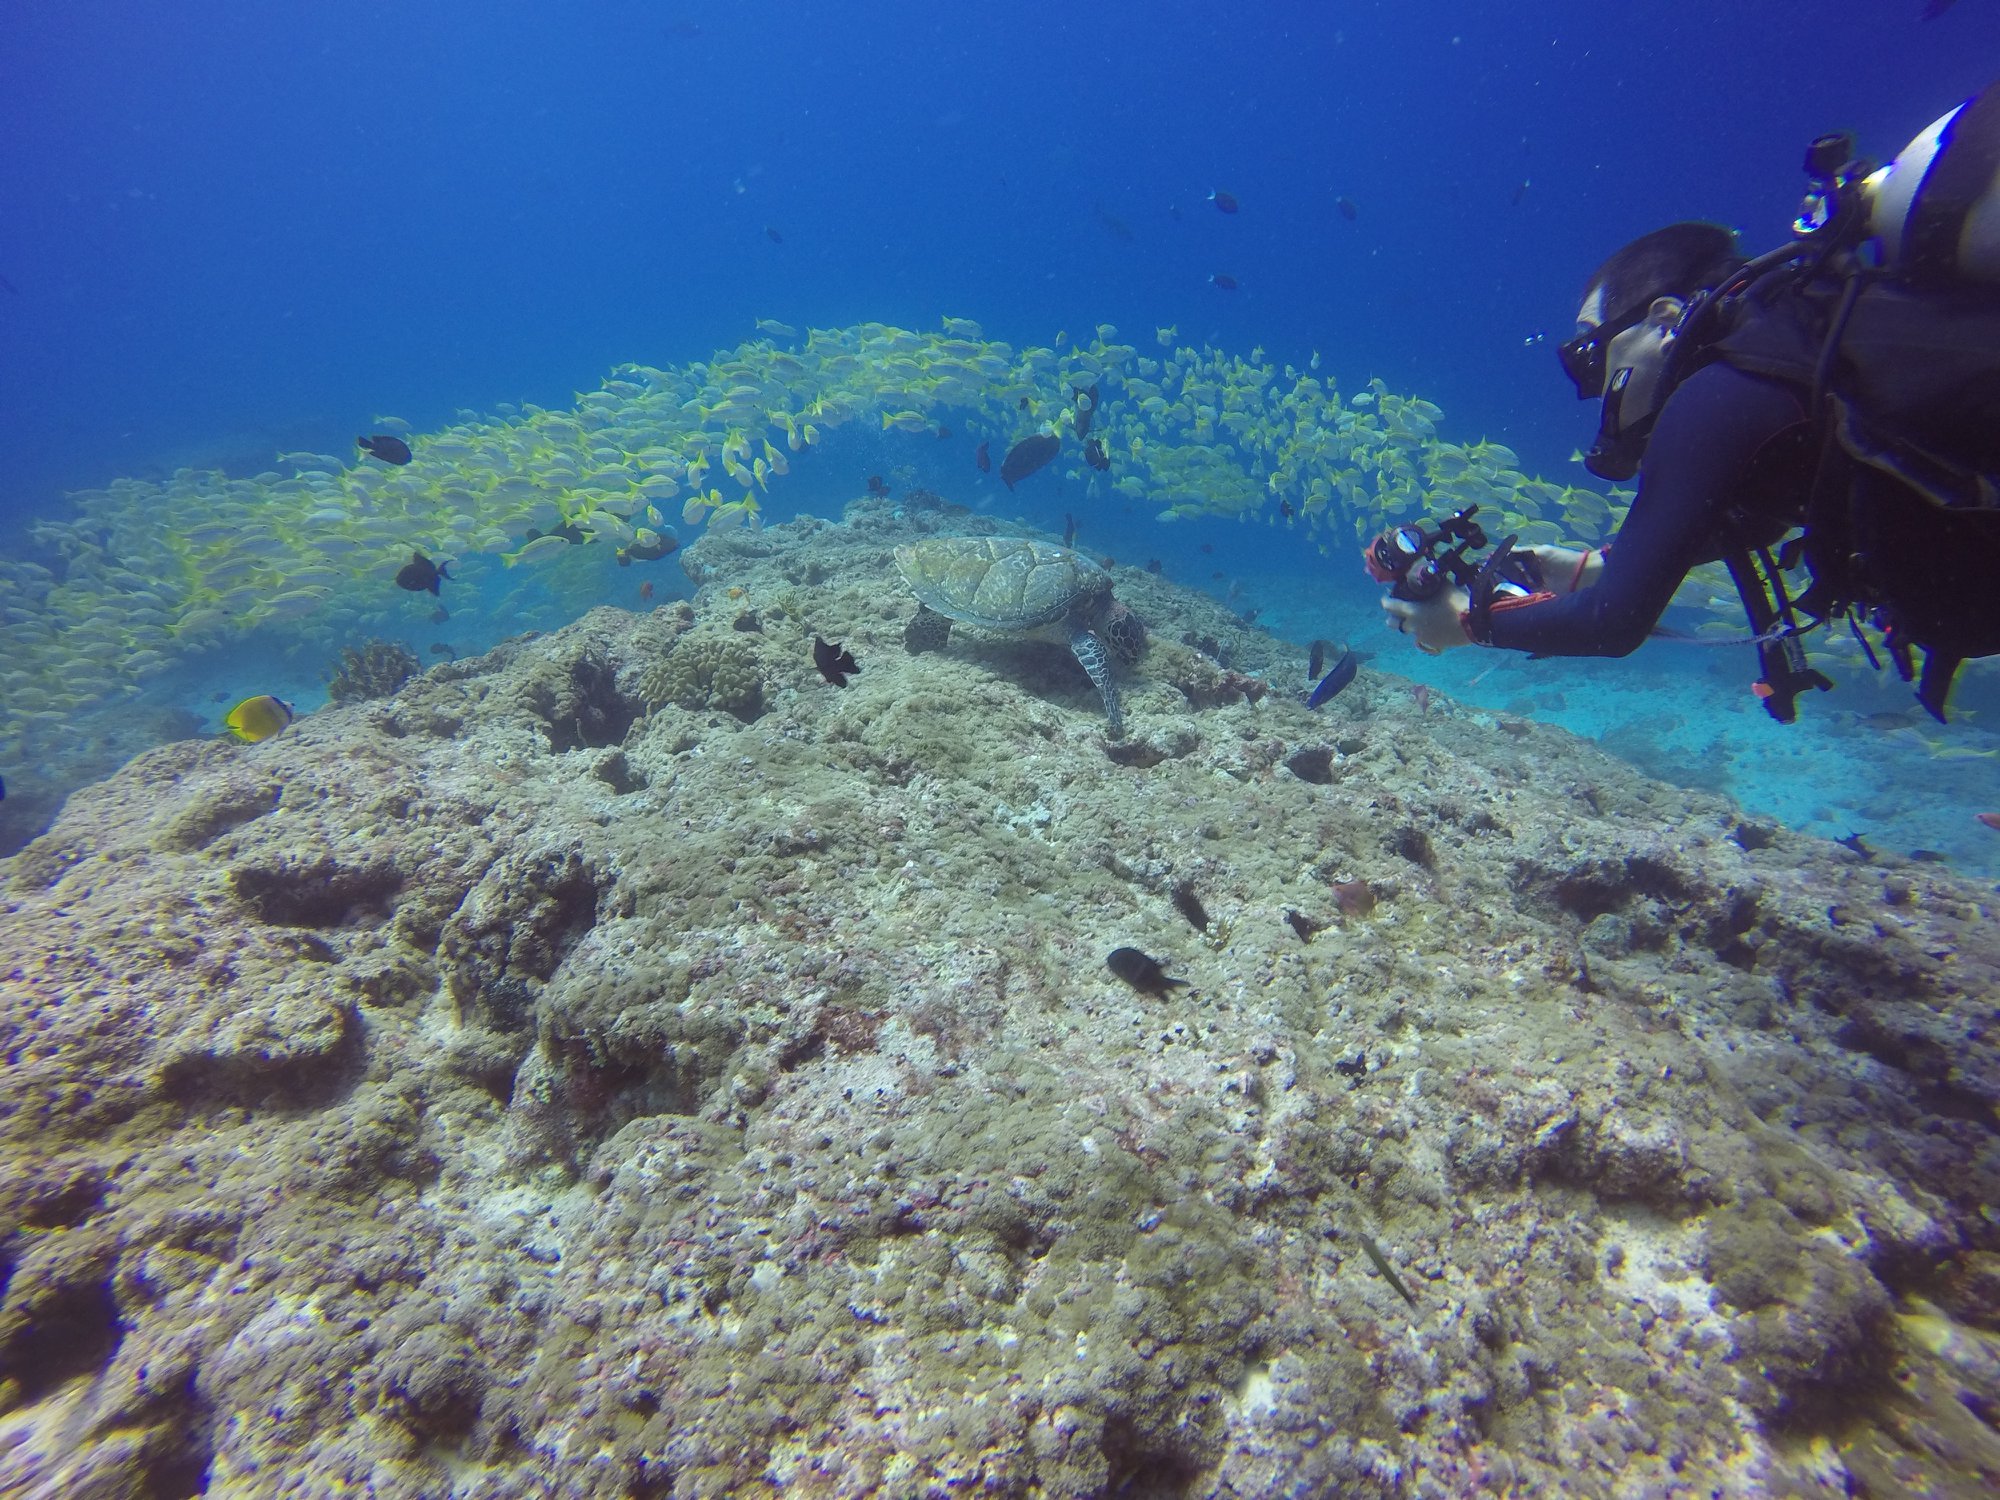 Fish-head-dive-MUSHIMASMINGILI-REEF-Maldives-ari-north-atoll-hangnaameedhoo